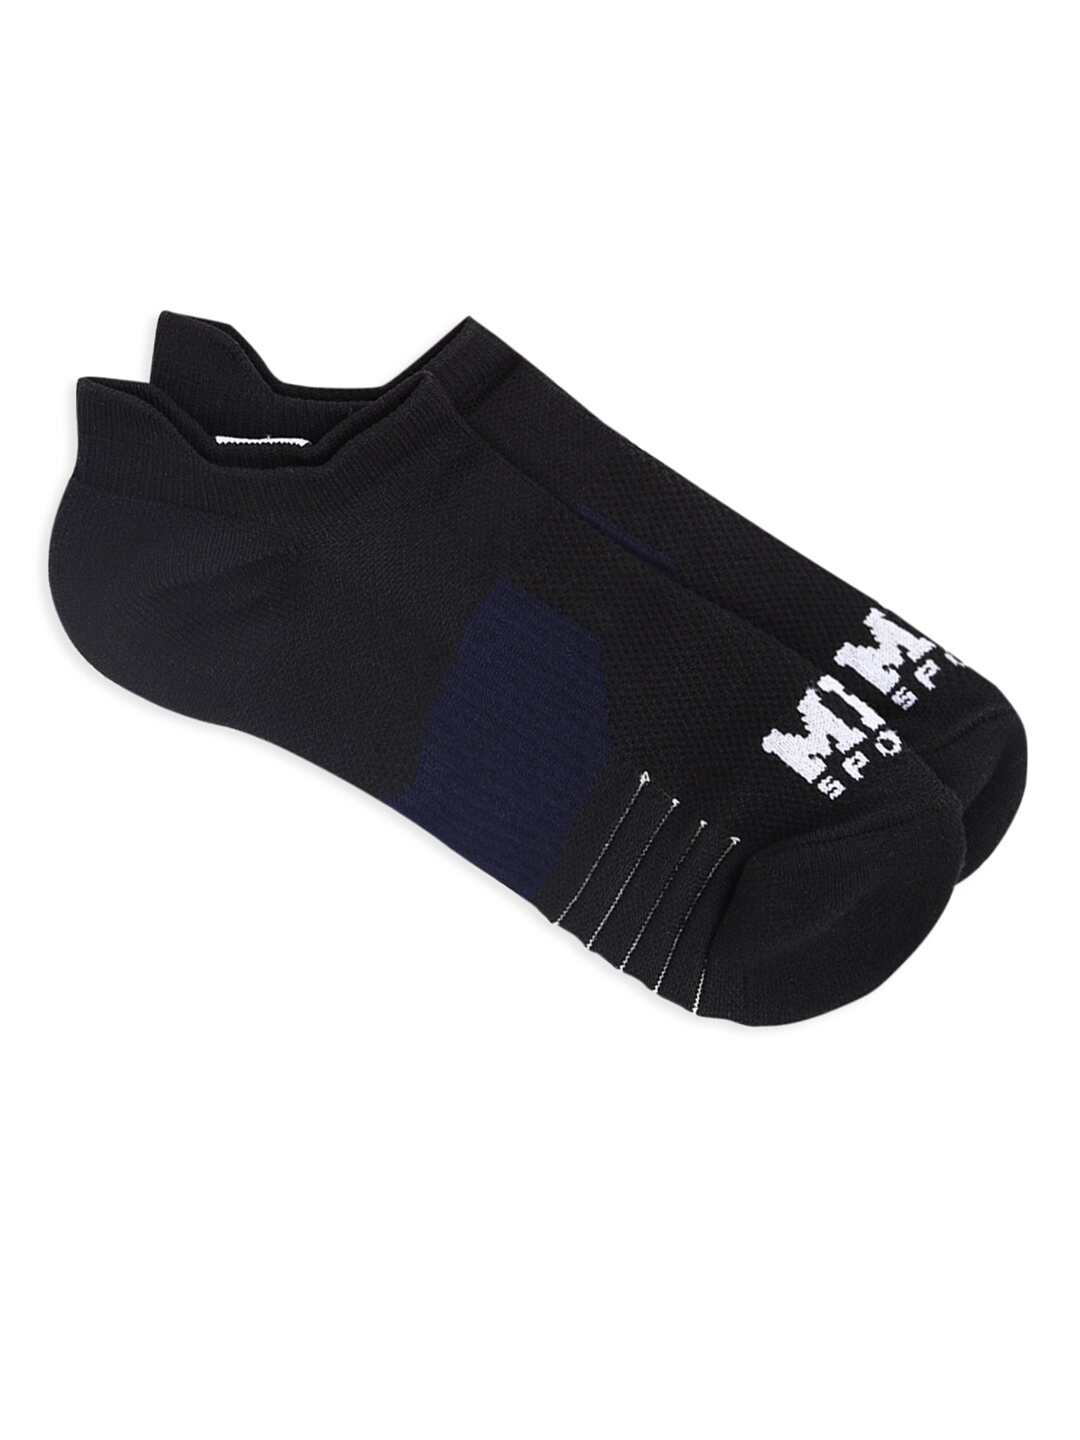 Buy MPL SPORTS Men Solid Self Design Low Ankle Compression Socks ...